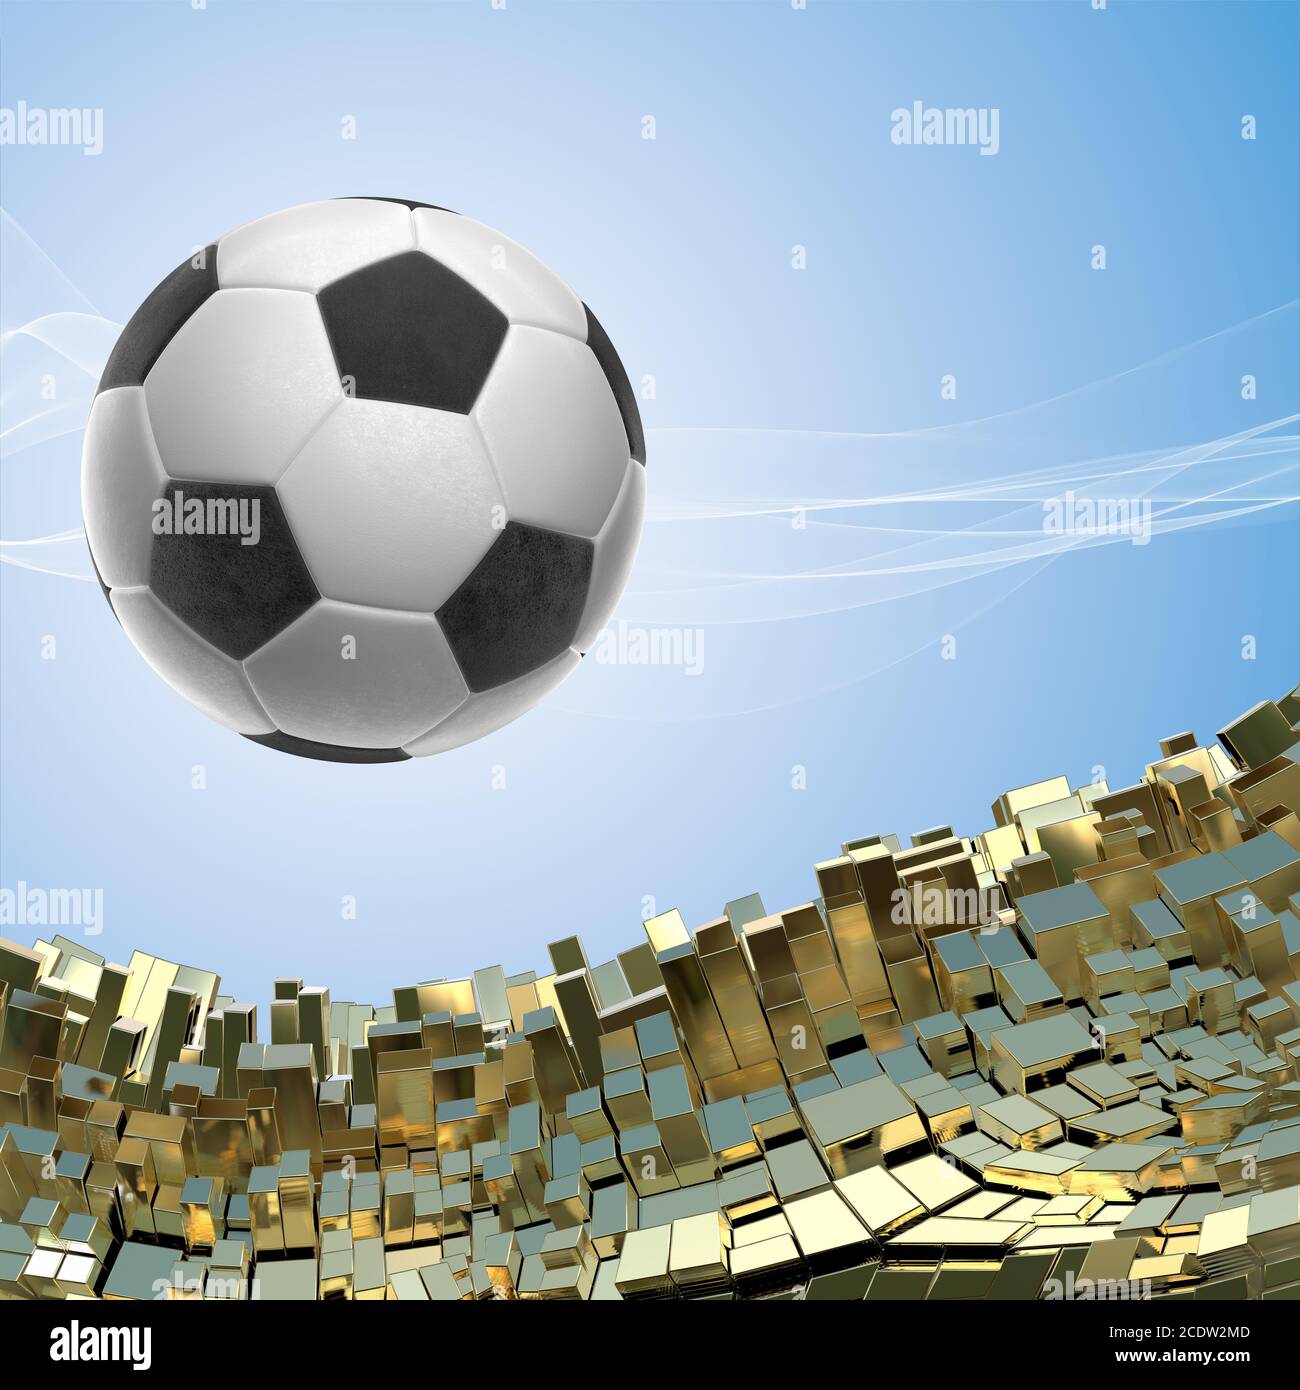 Fußball-Ball auf goldenen architektonischen Hintergrund 3 isolierte d Abbildung Stockfoto